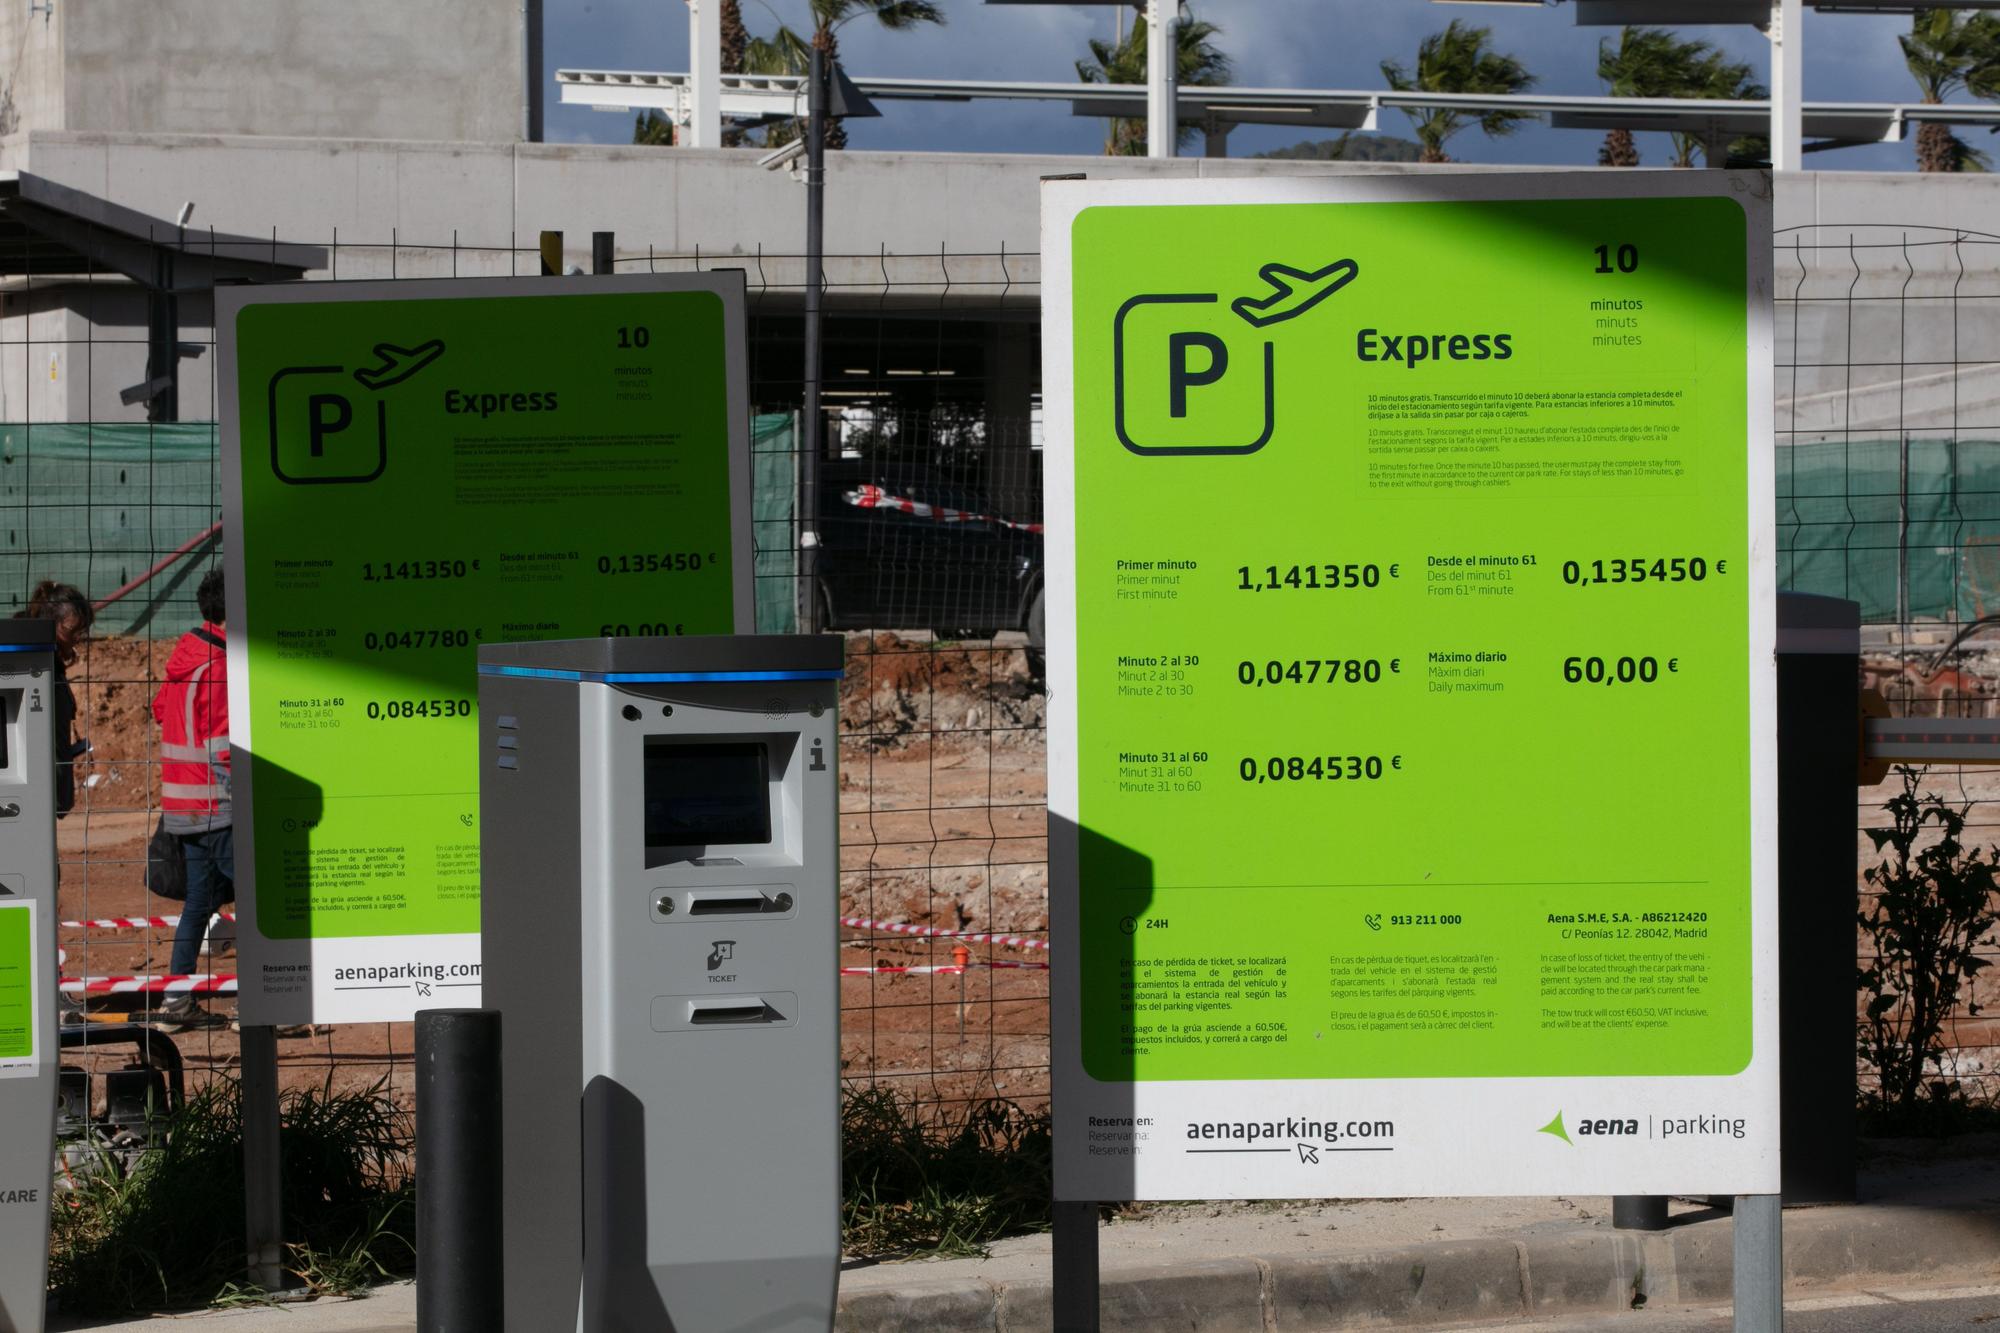 Obras en el parking del aeropuerto de Ibiza